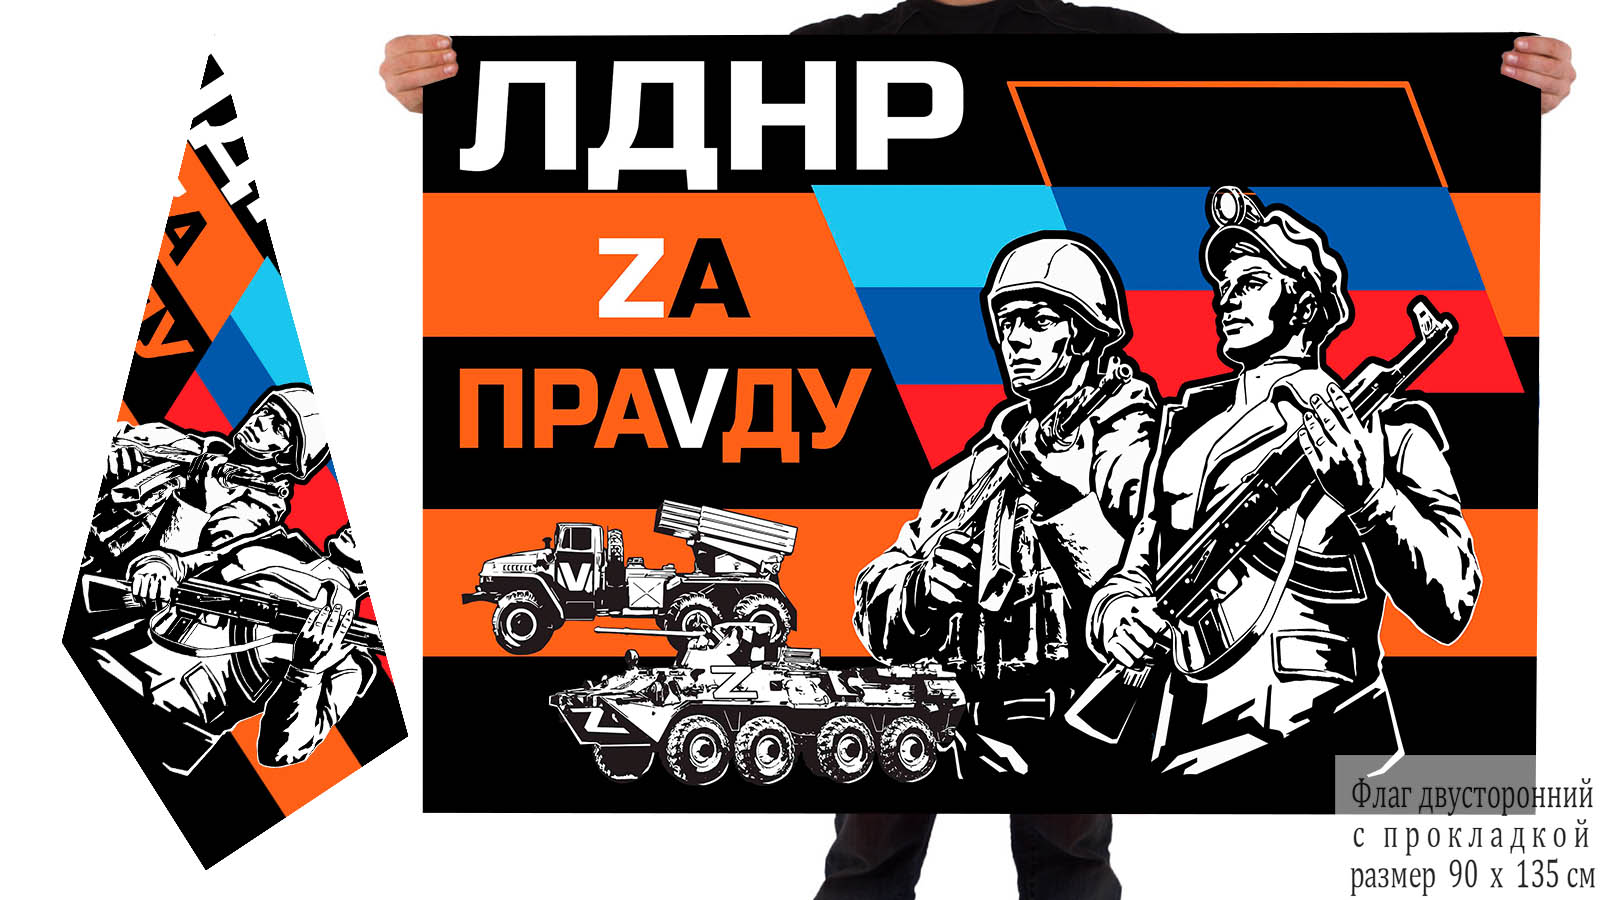 Двусторонний гвардейский флаг ЛДНР "Zа праVду"